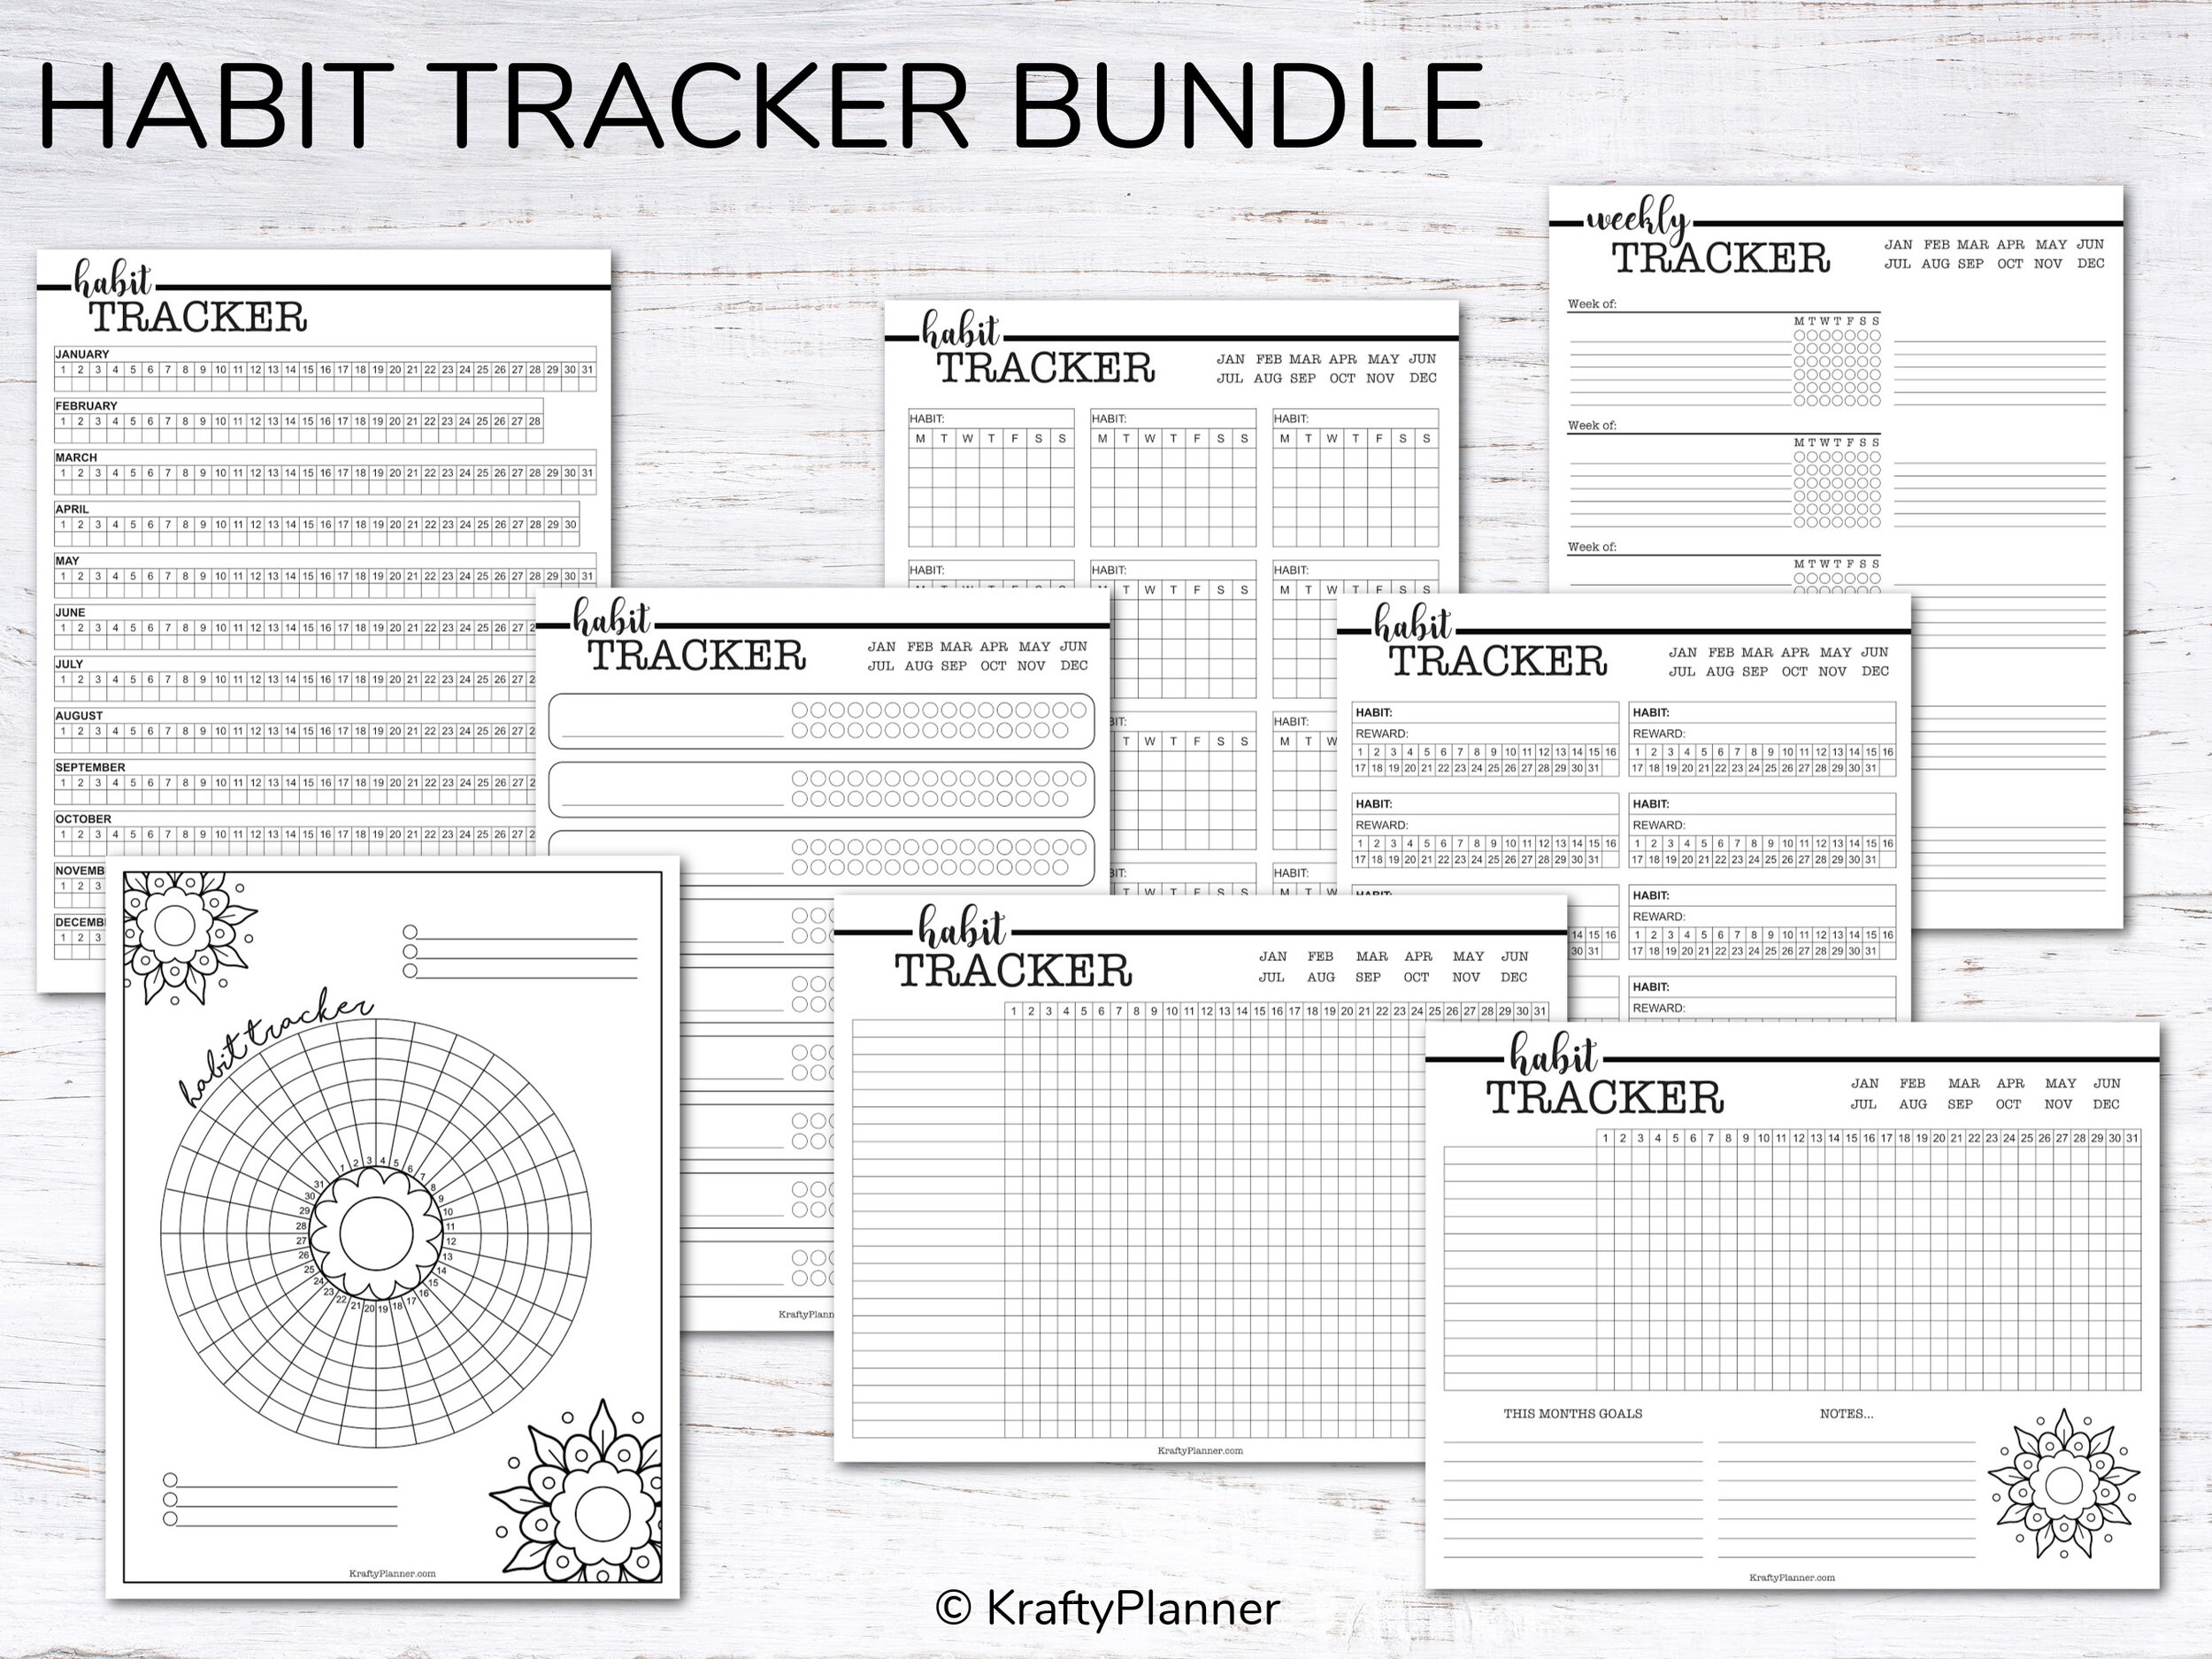 The Krafty Planner Habit Tracker Bundle